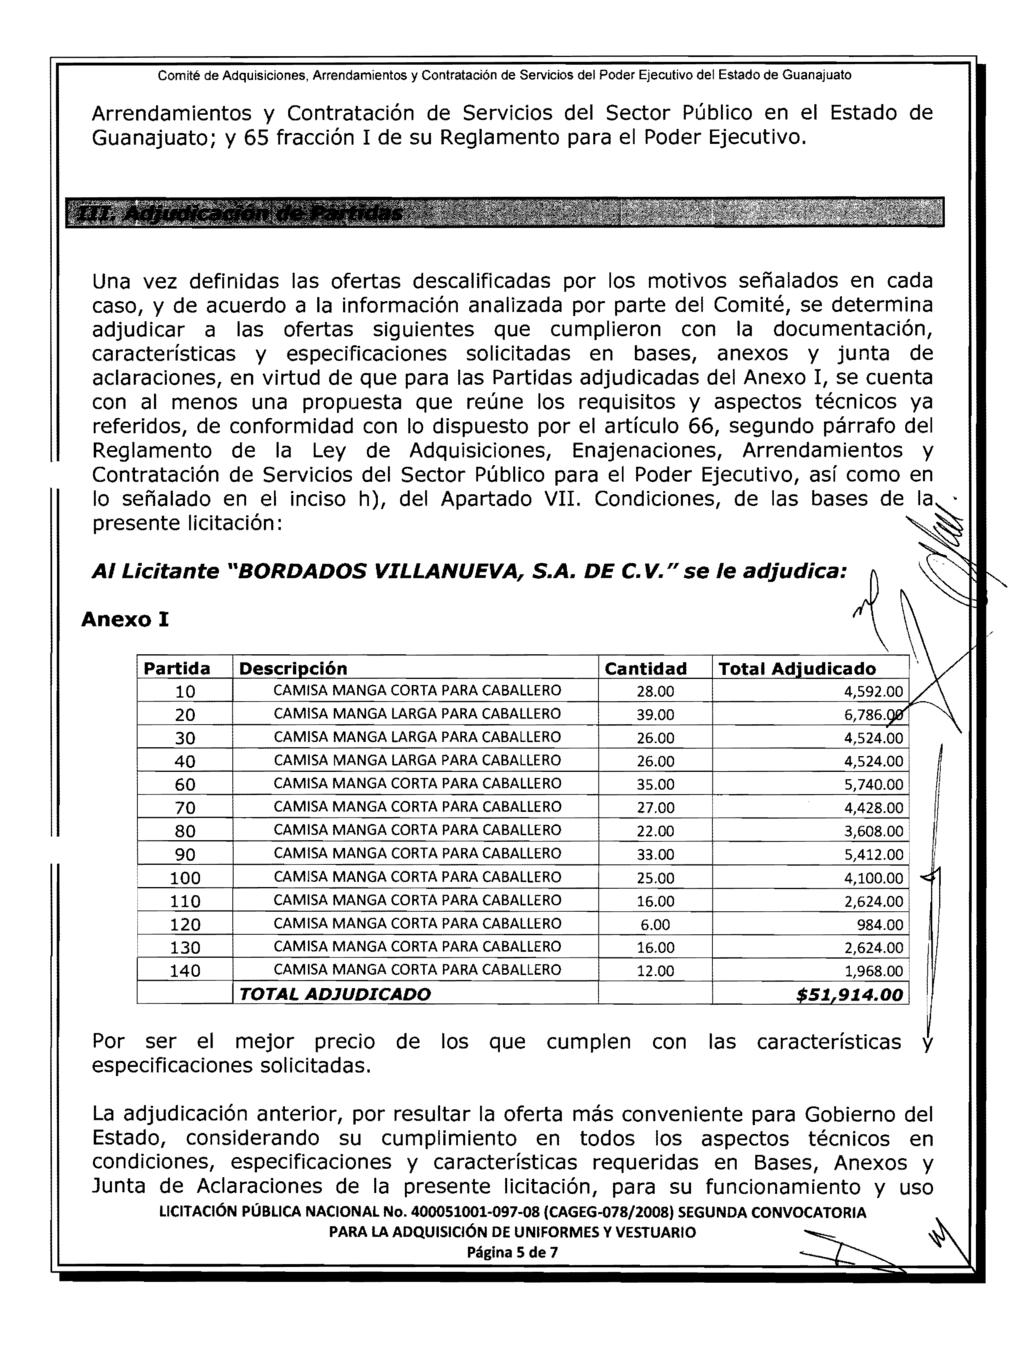 Arrendamientos y Contratacion de Servicios del Sector Publico en el Estado de Guanajuato; y 65 fraccion de su Reglamento para el Poder Ejecutivo.